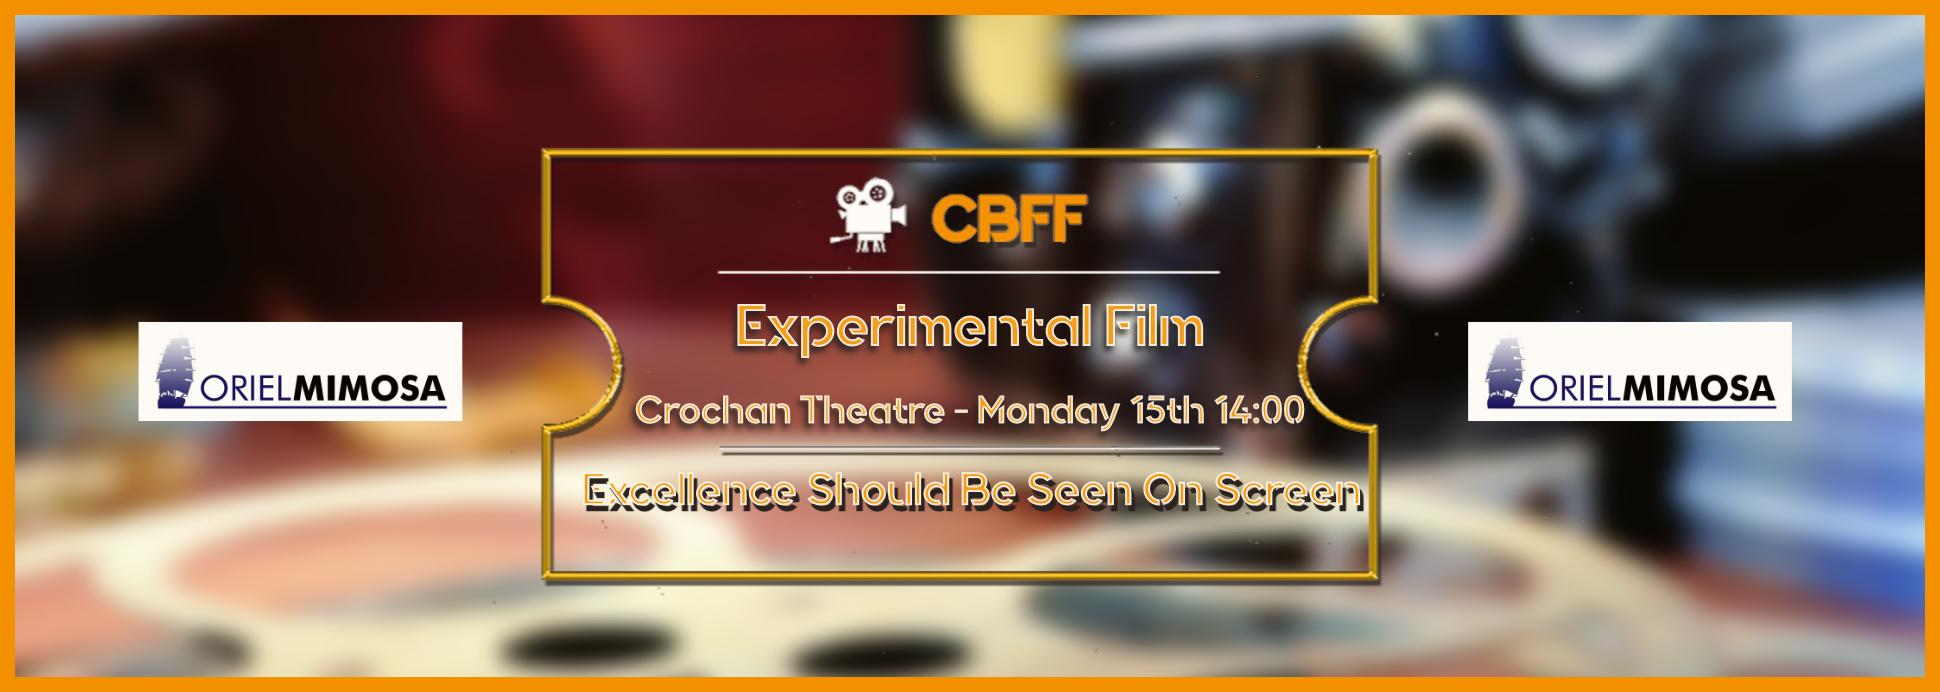 Crochan Experimental Film 15th 14:00